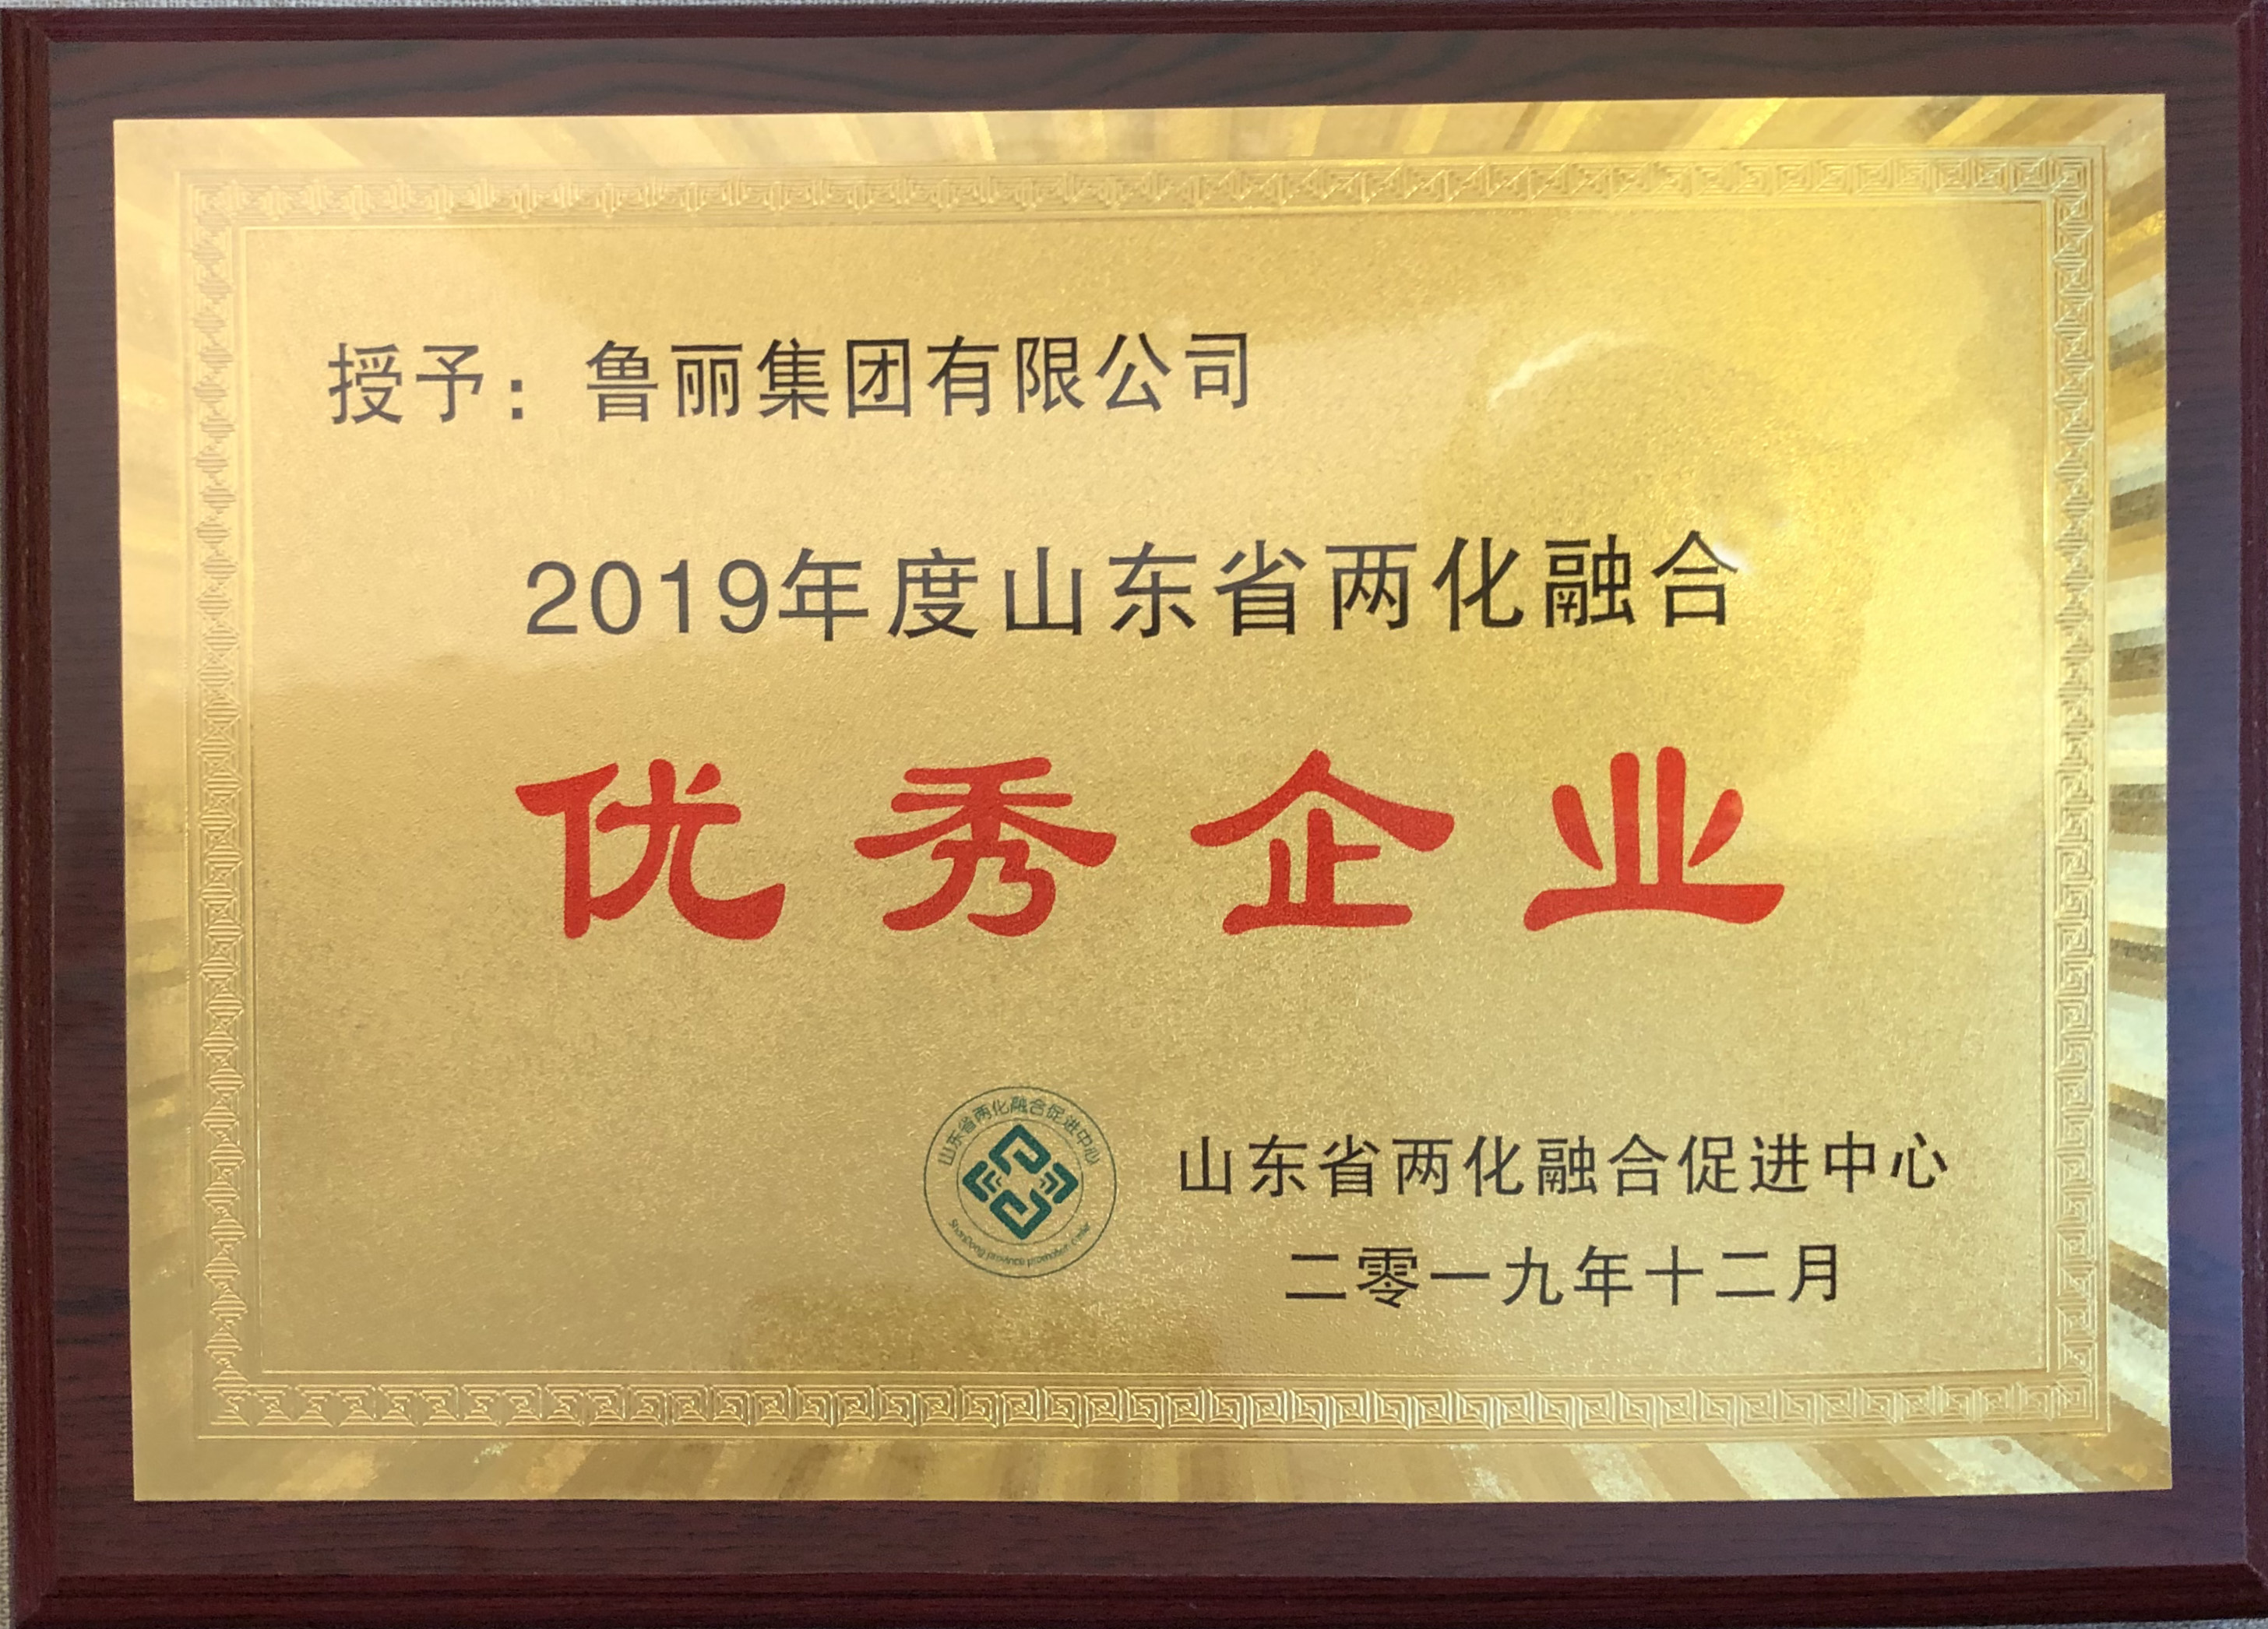 鲁丽集团被评为山东省2019年度两化融合优秀企业